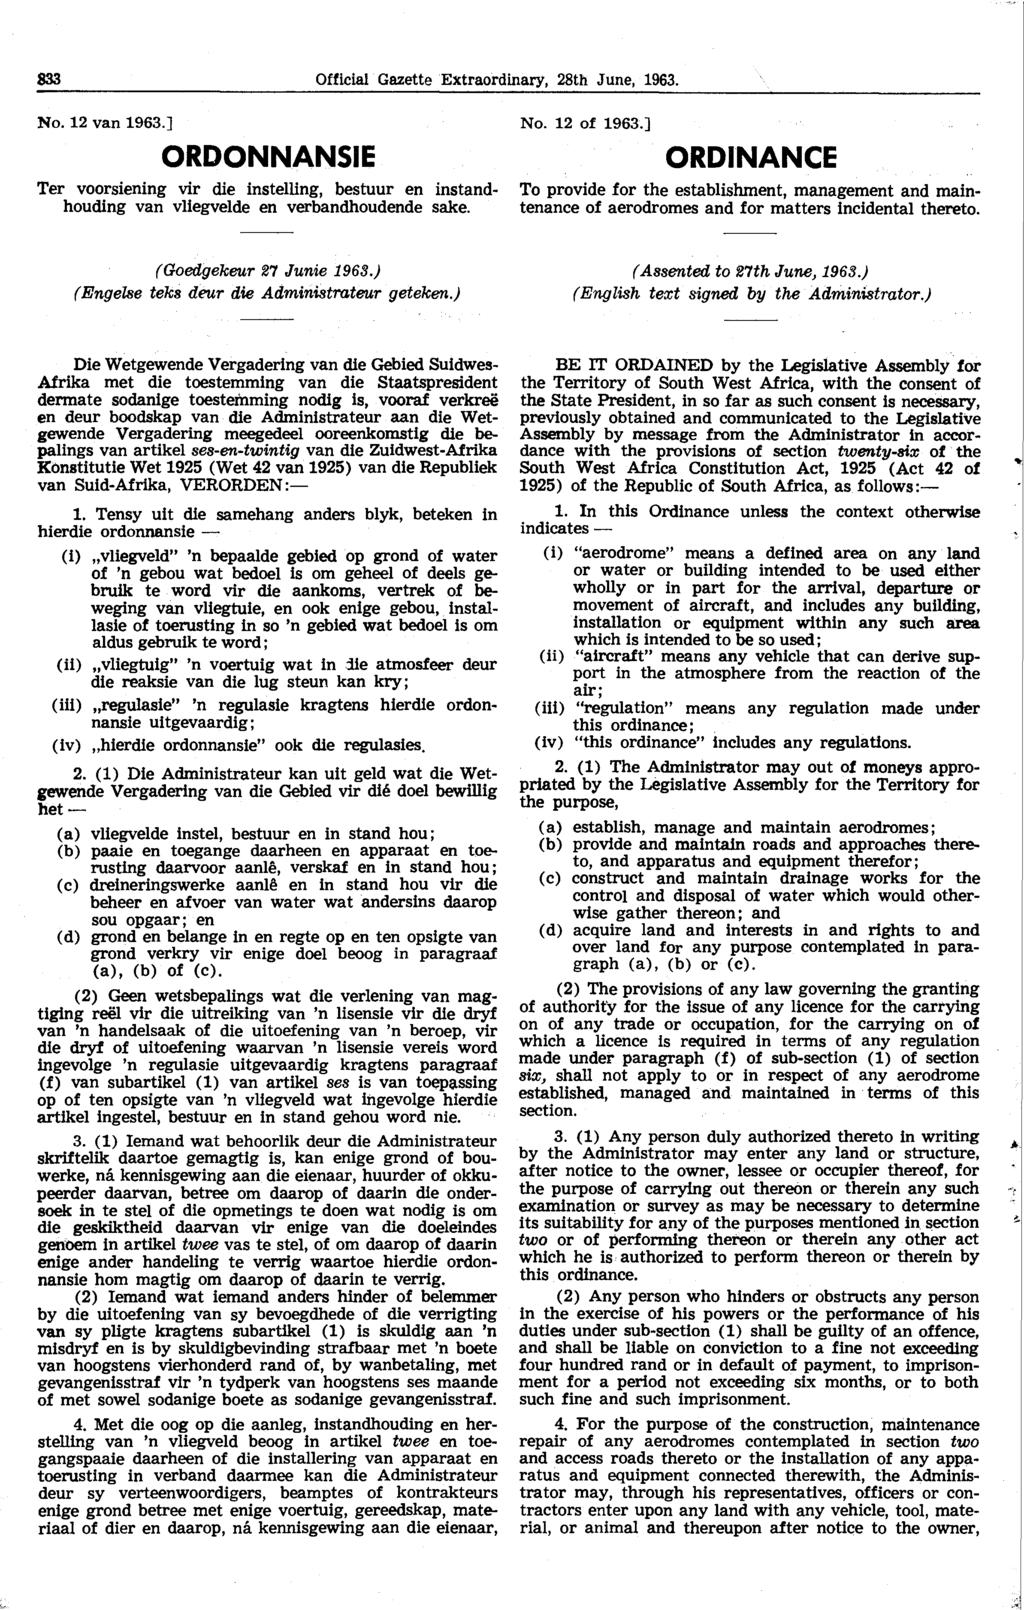 833 Official Gazette Extraordinary, 28th June, 1963. No. 12 van 1963.] ORDONNANSIE Ter voorsiening vir die instelling, bestuur en instandhouding van vliegvelde en verbandhoudende sake. No. 12 of 1963.